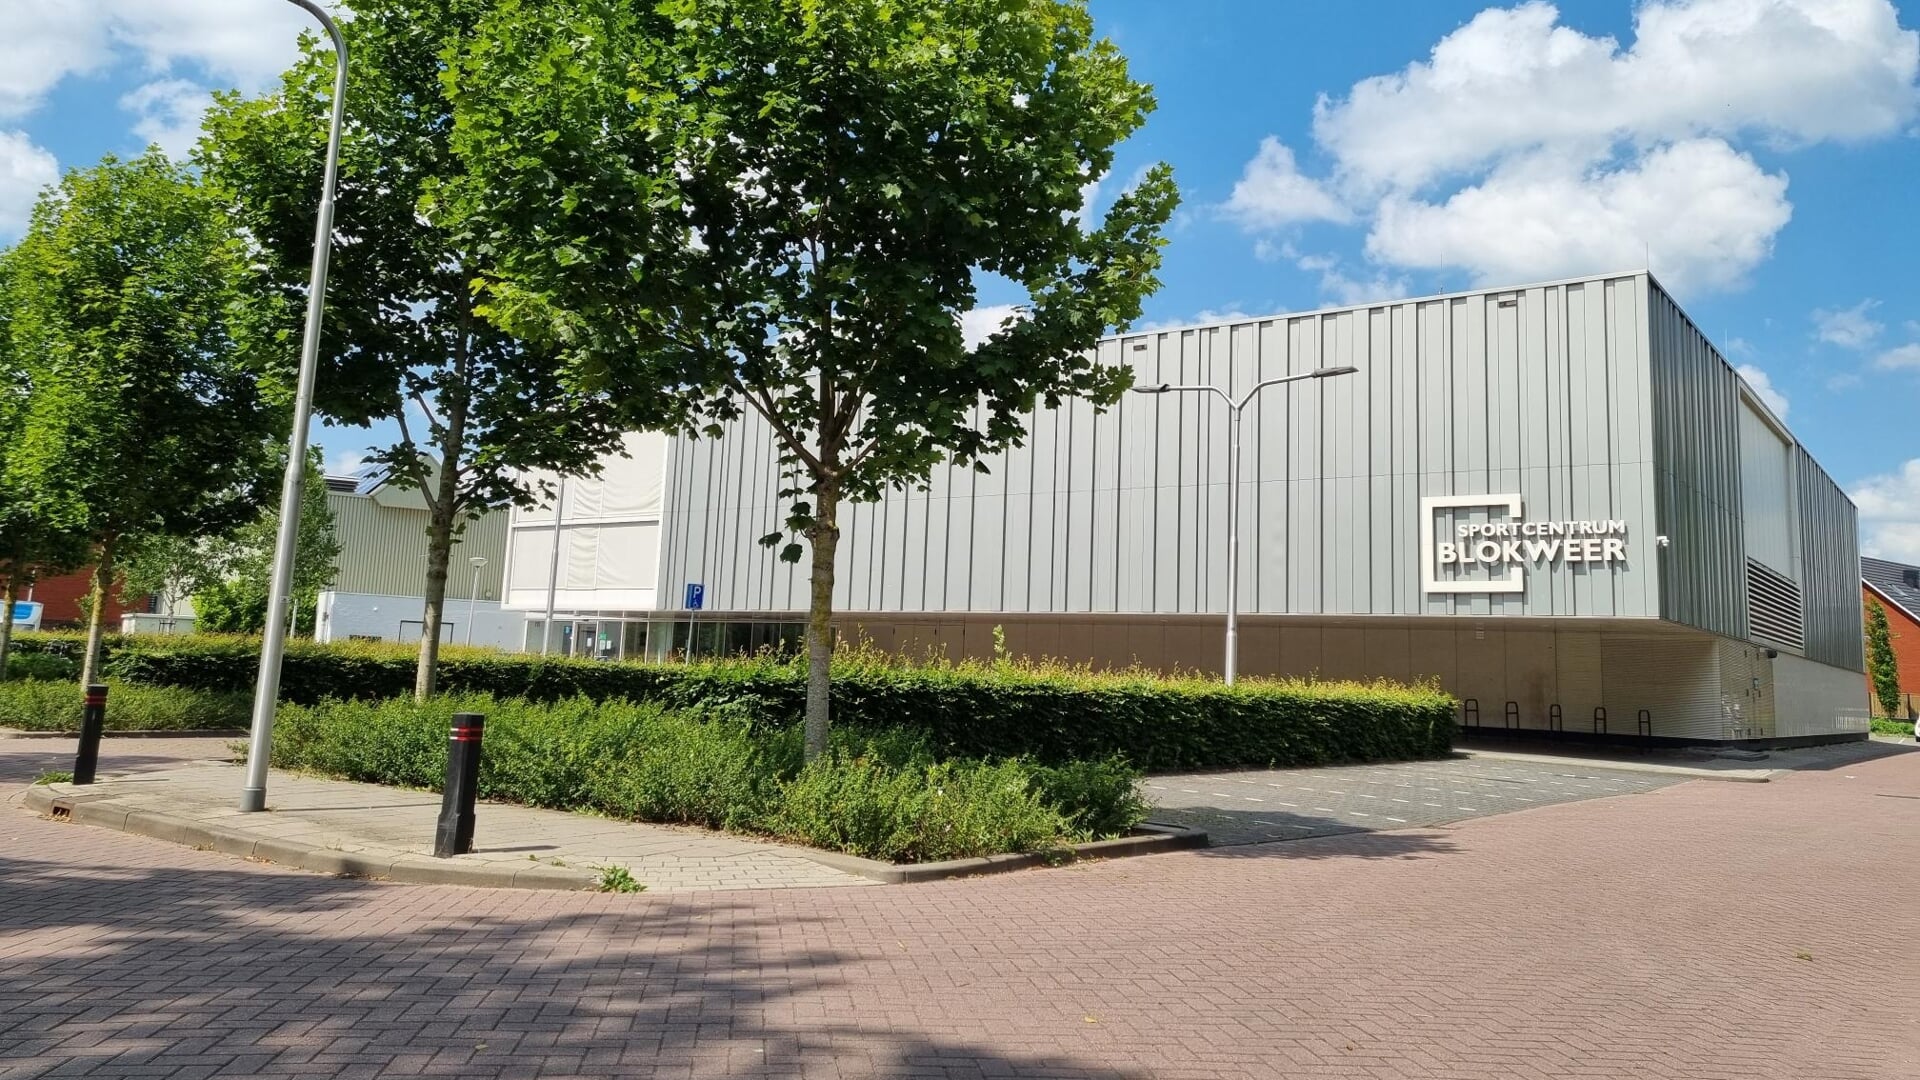 • Sportcentrum Blokweer in Alblasserdam.